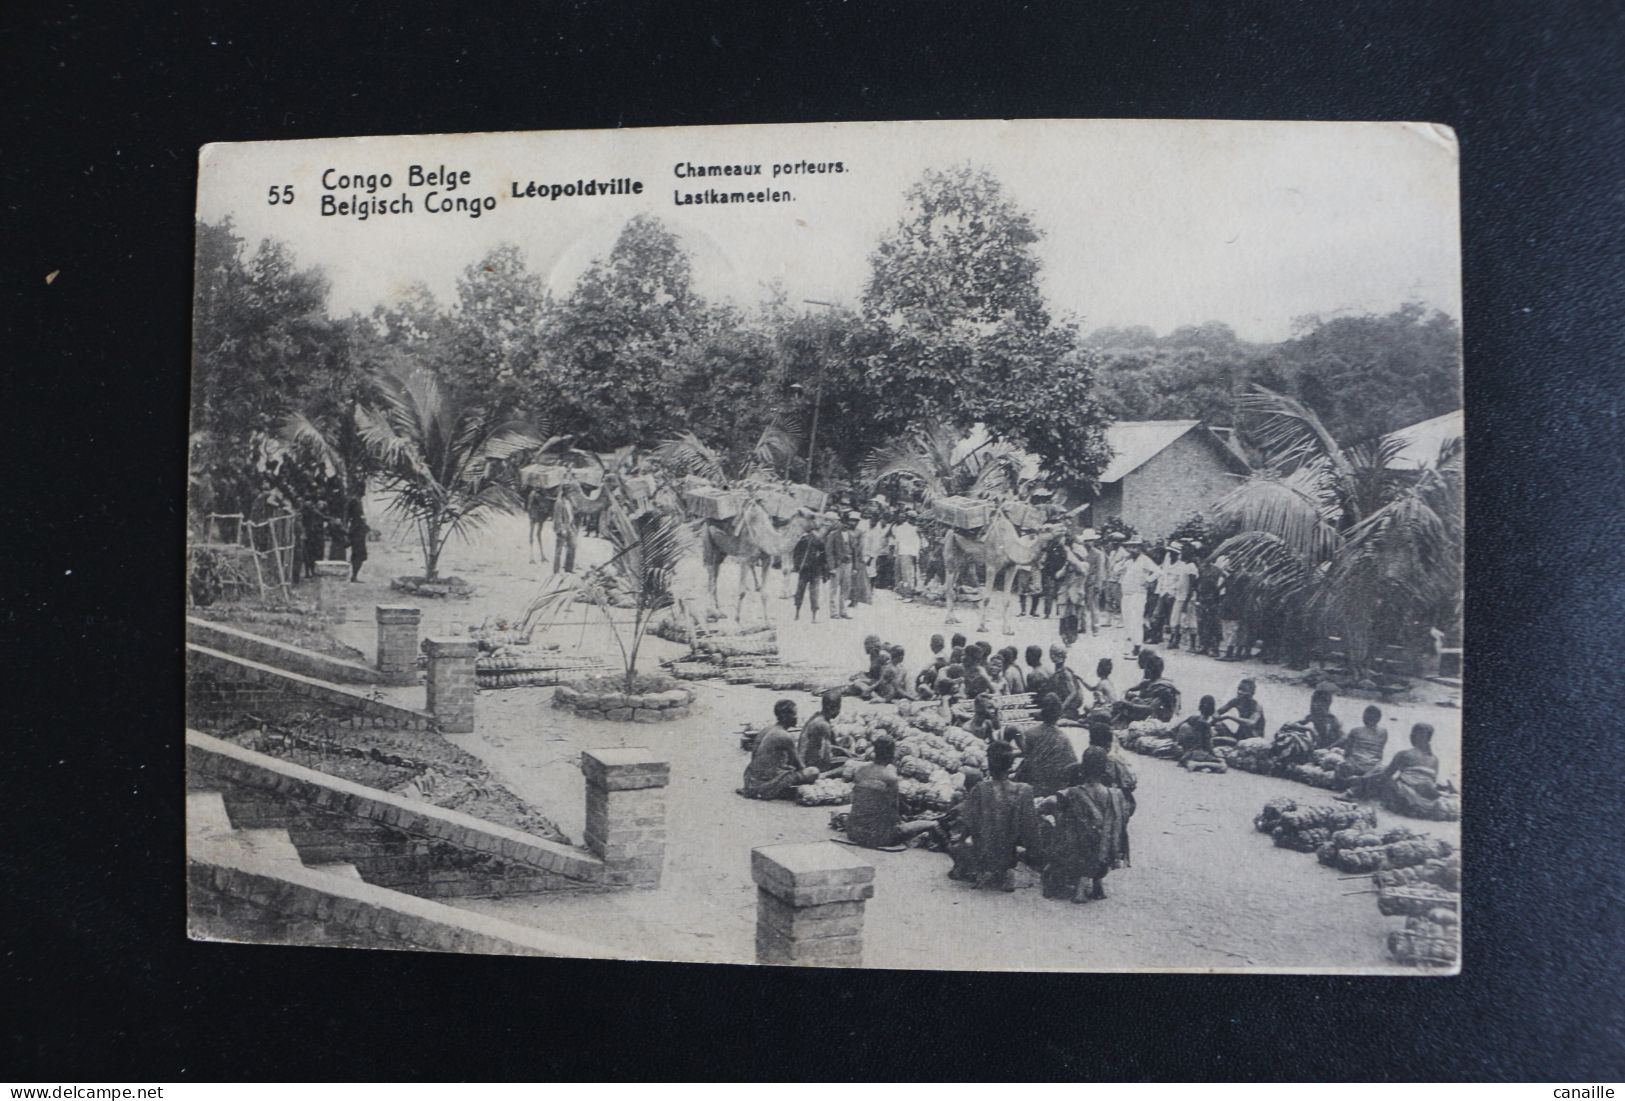 S-C 183 / Congo - Kinshasa (ex Zaire) - Congo Belge  -  Léopoldville Chameaux Porteurs  / 1914 - Kinshasa - Leopoldville